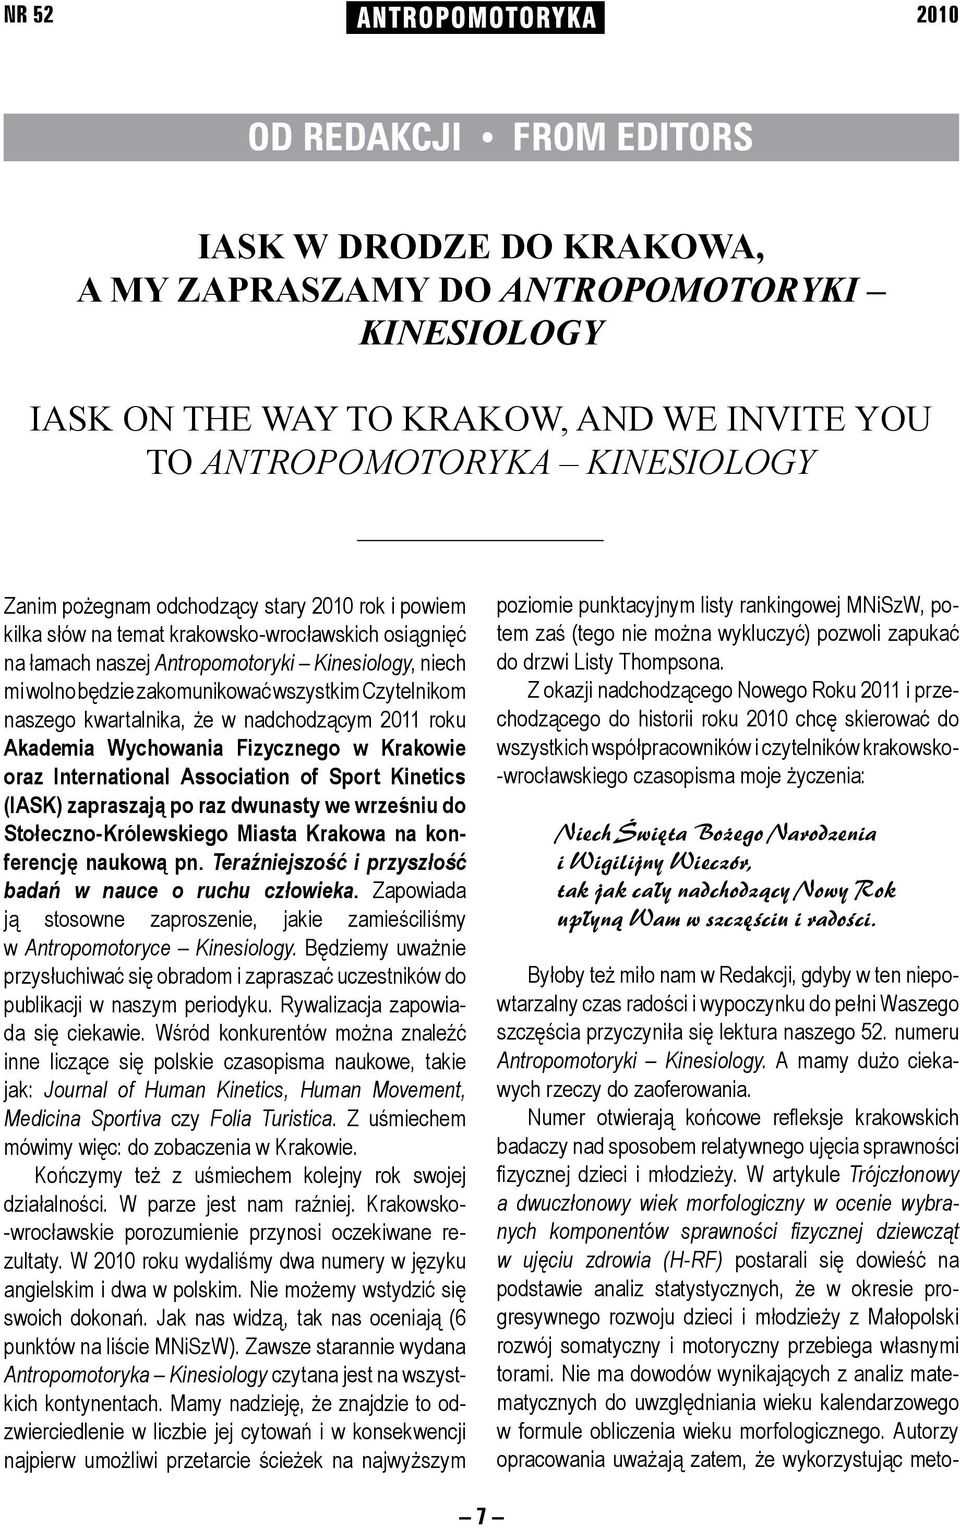 wszystkim Czytelnikom naszego kwartalnika, że w nadchodzącym 2011 roku Akademia Wychowania Fizycznego w Krakowie oraz International Association of Sport Kinetics (IASK) zapraszają po raz dwunasty we